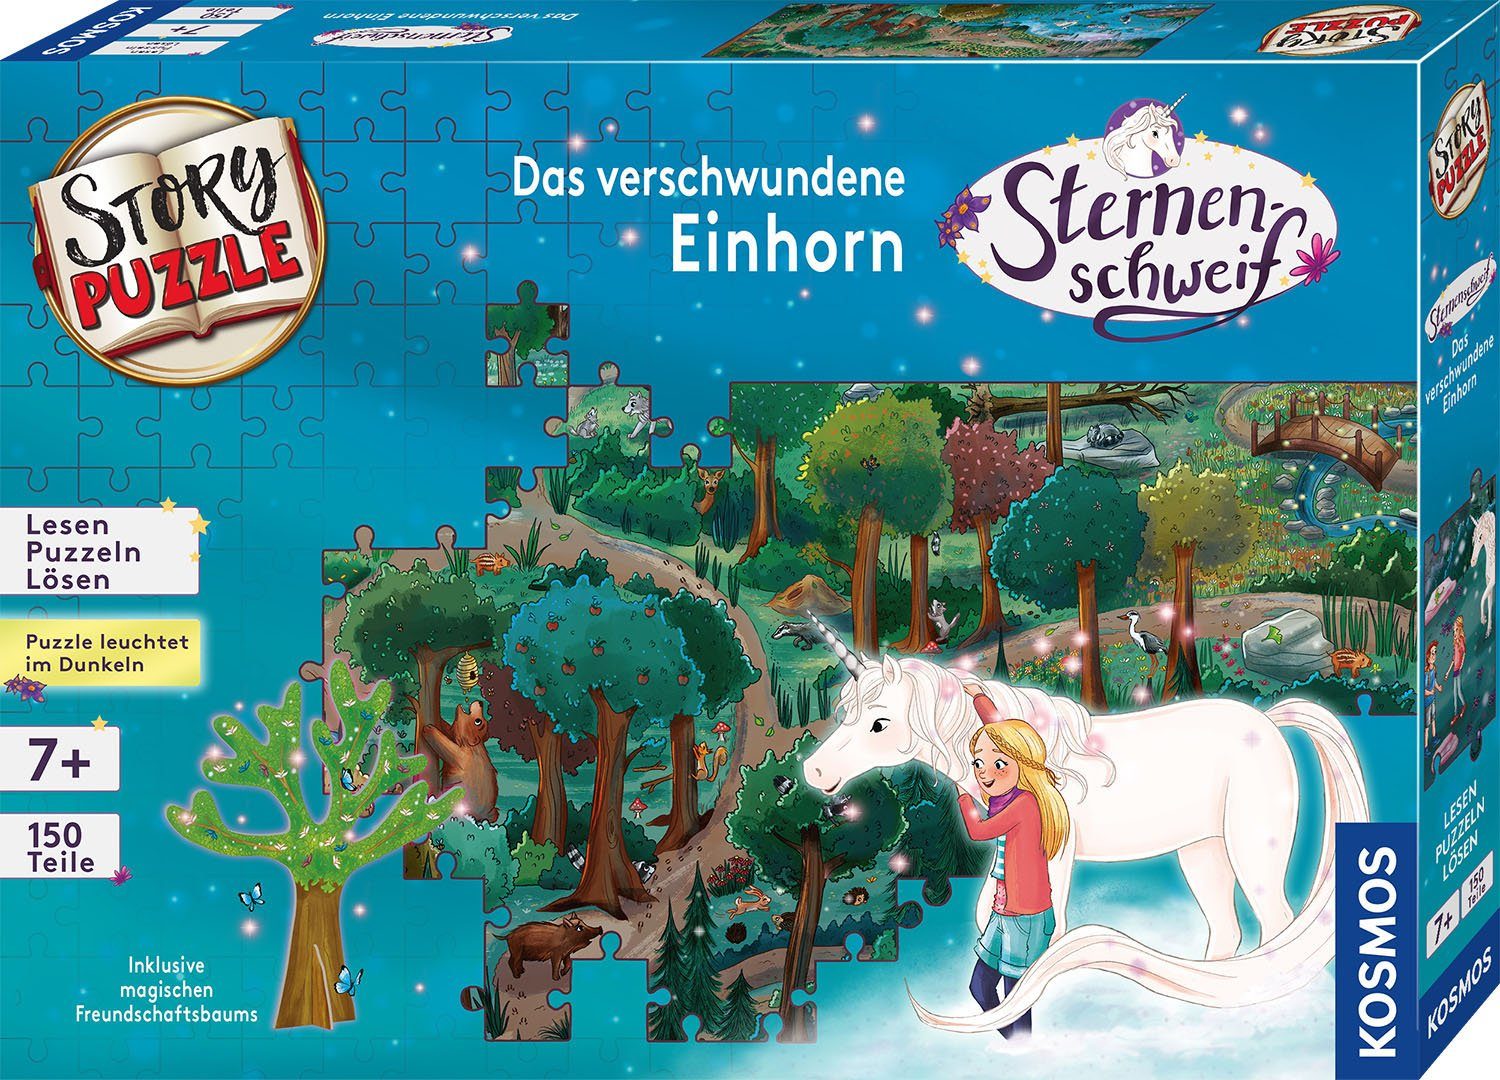 verschwundene Sternenschweif, Einhorn, StoryPuzzle, Made Puzzleteile, Puzzle in Kosmos Das 150 Germany